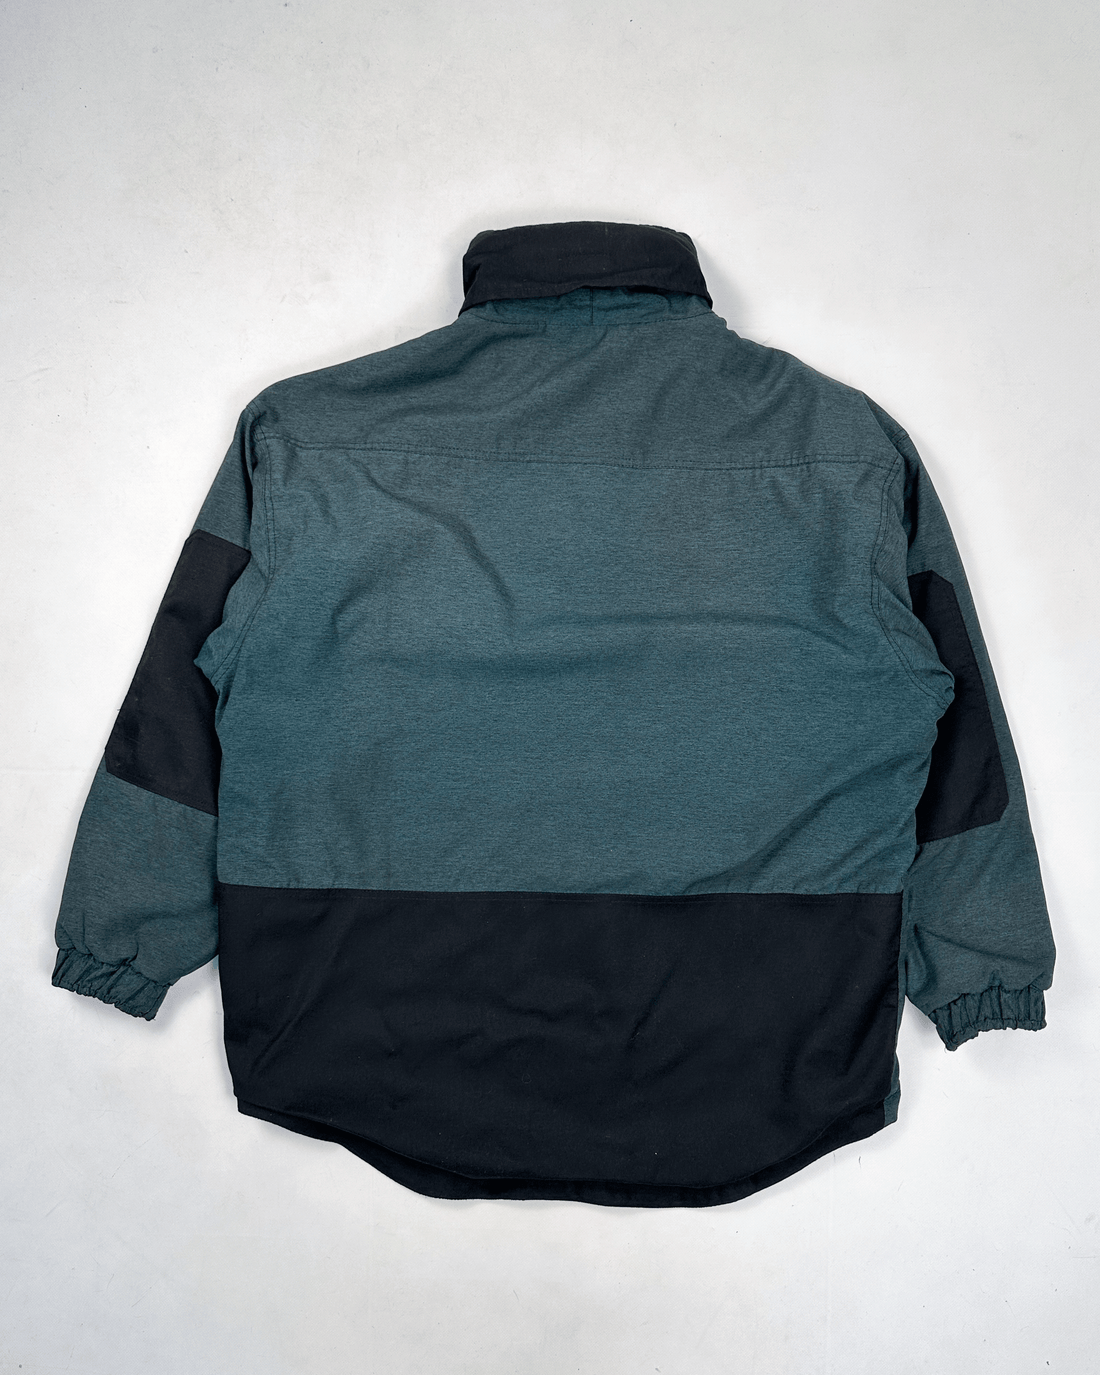 Goondy Windy 2-Layer Green Polar Jacket 1990's